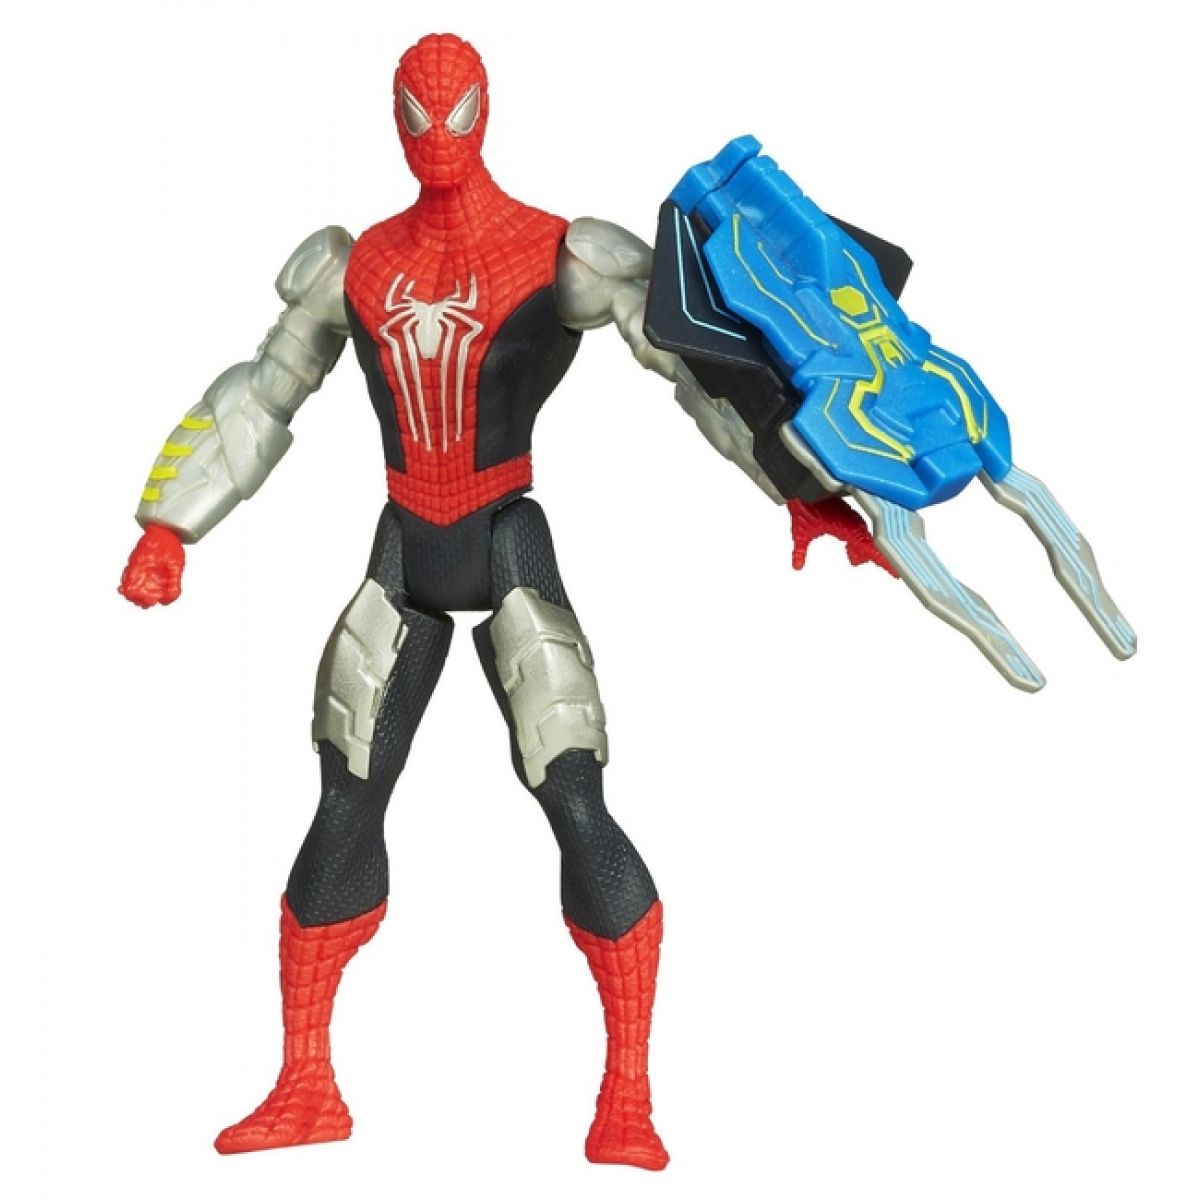 Hasbro Spiderman figurka se speciálními akčními doplňky - Spiderman A5701